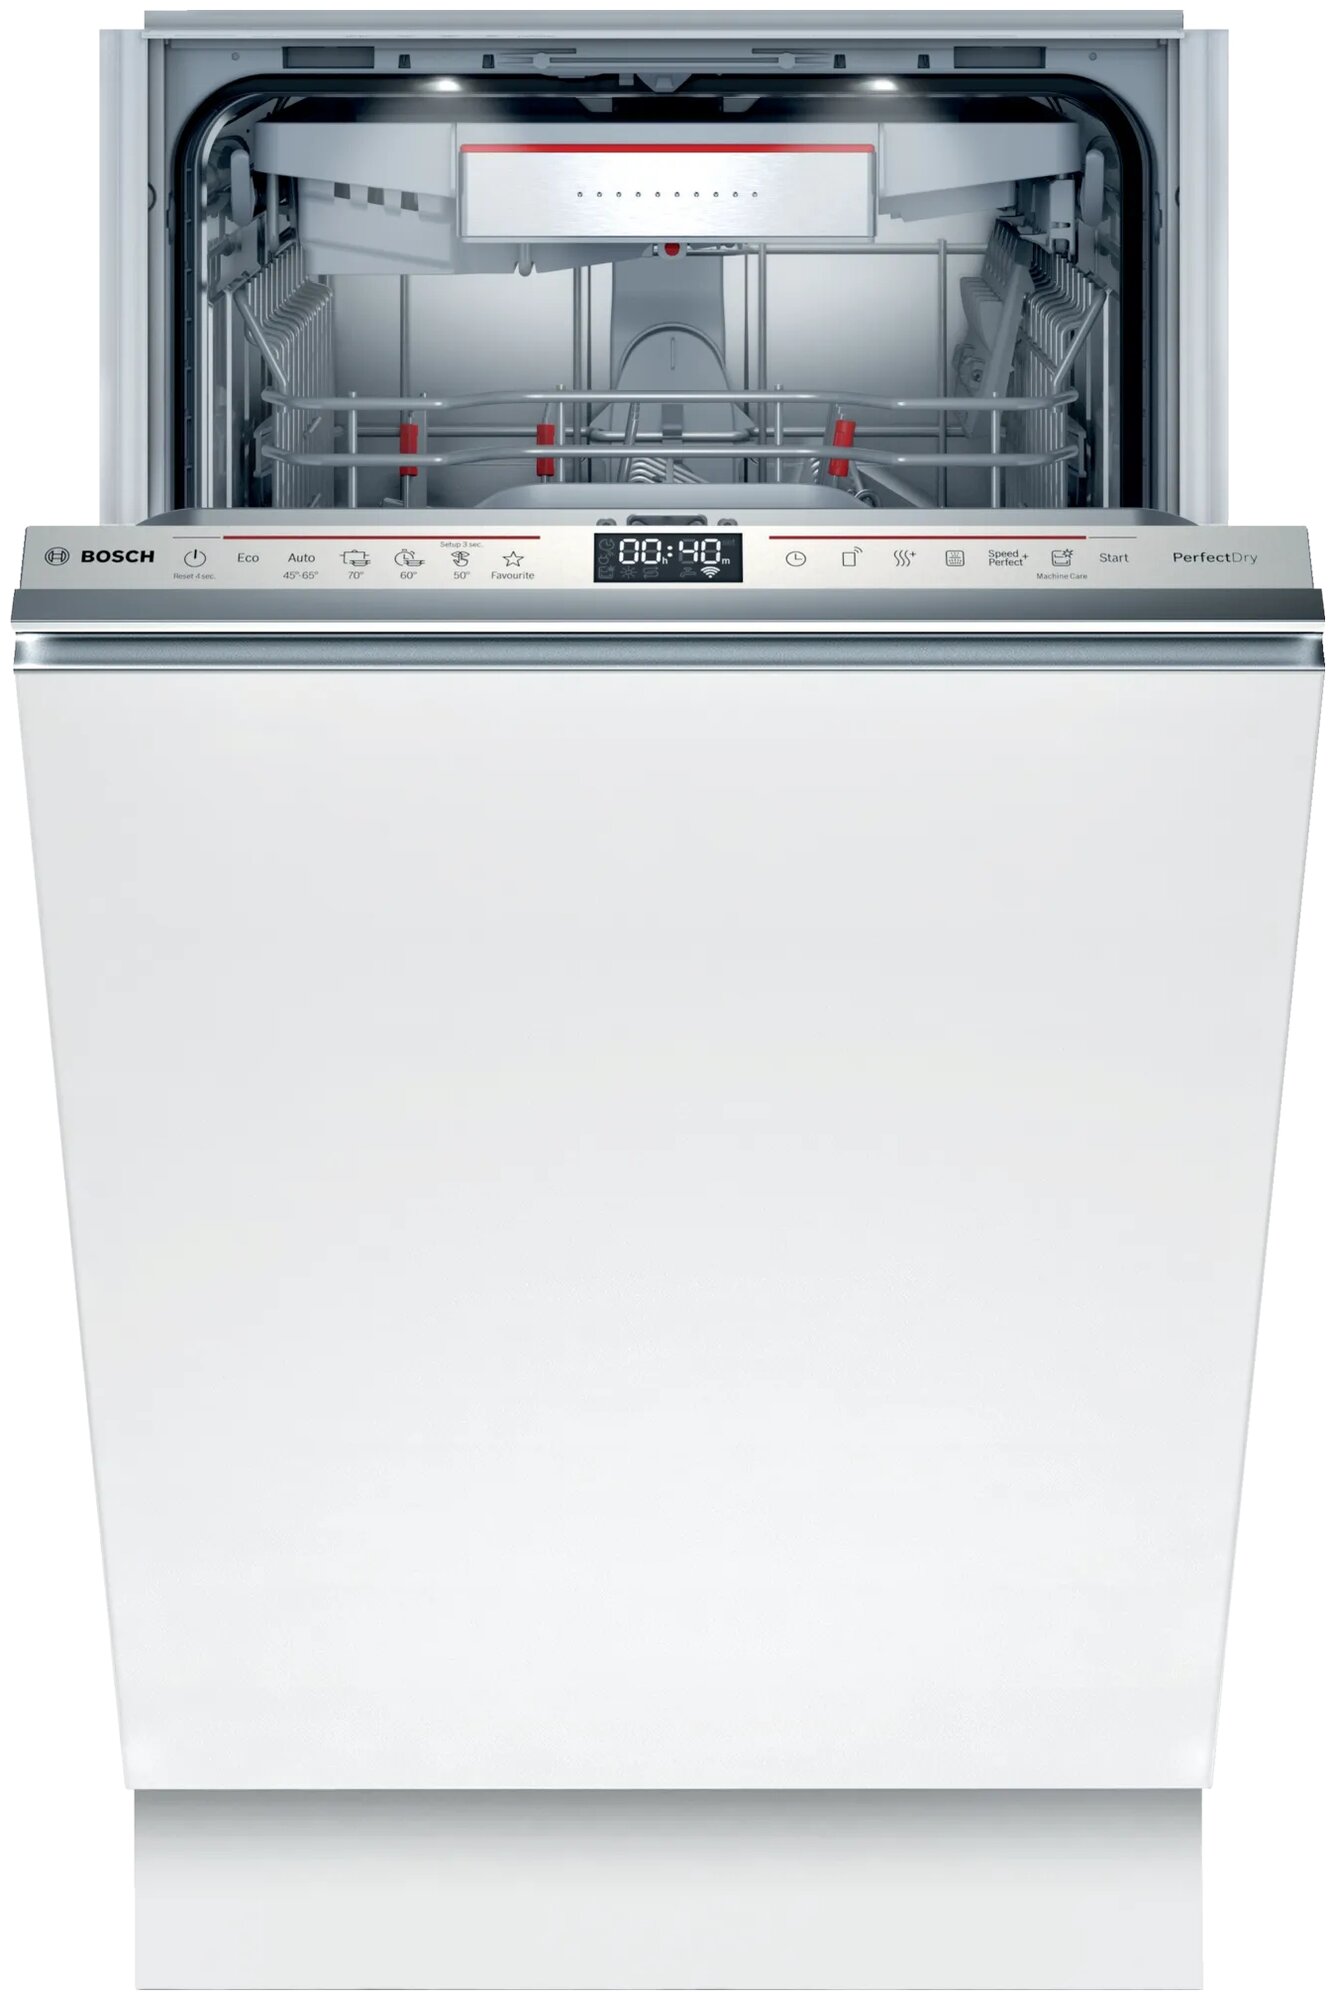 Встраиваемая посудомоечная машина Bosch - фото №1